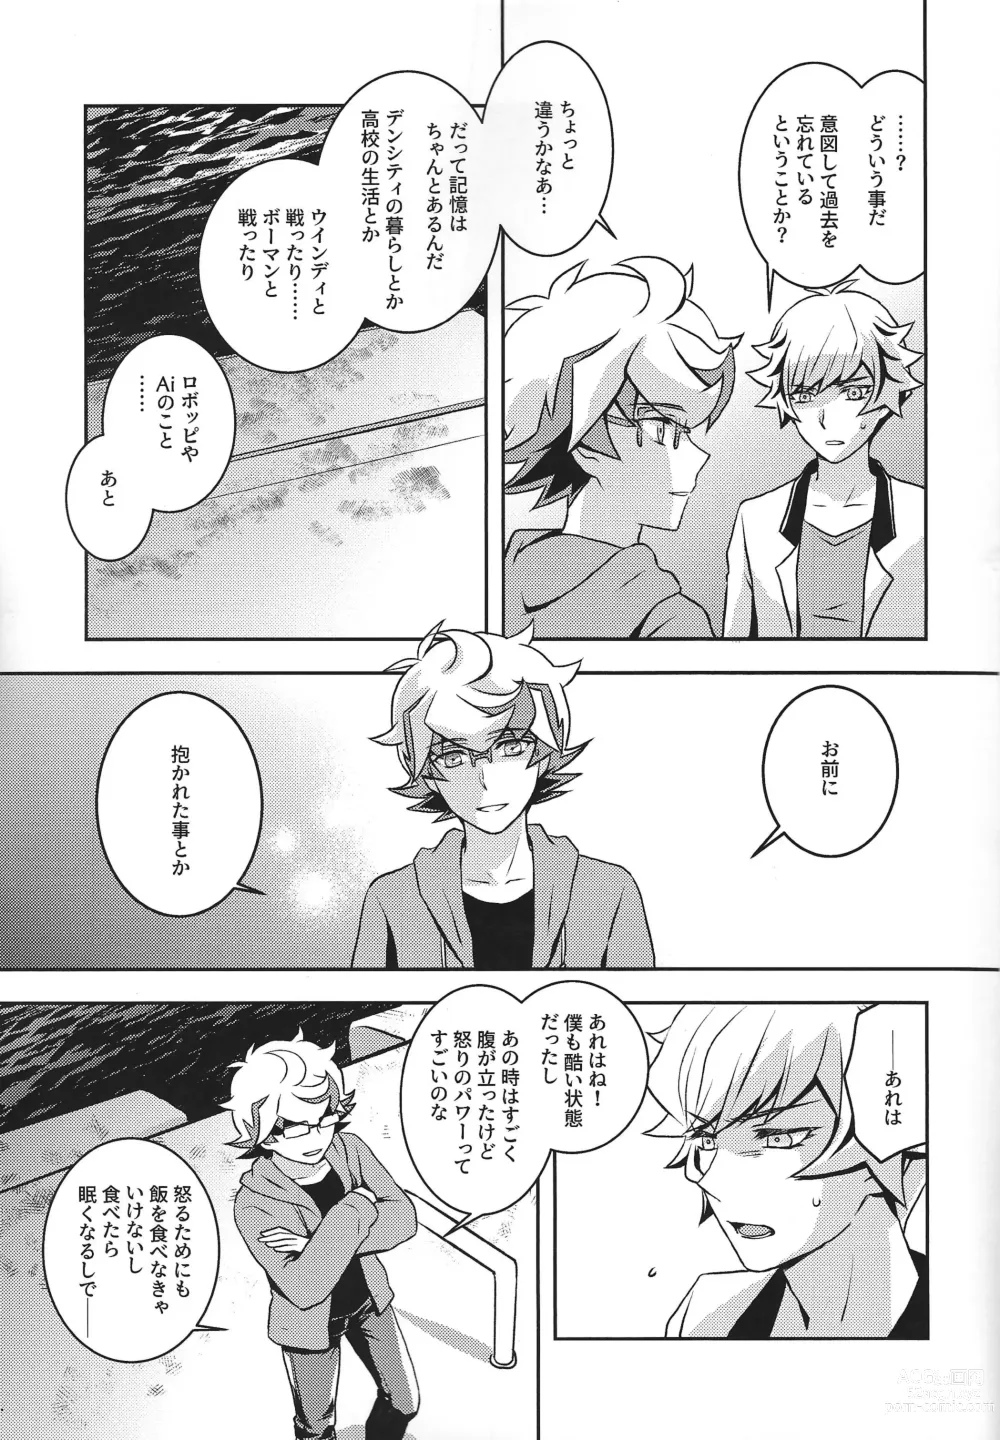 Page 16 of doujinshi Mamoru Imi